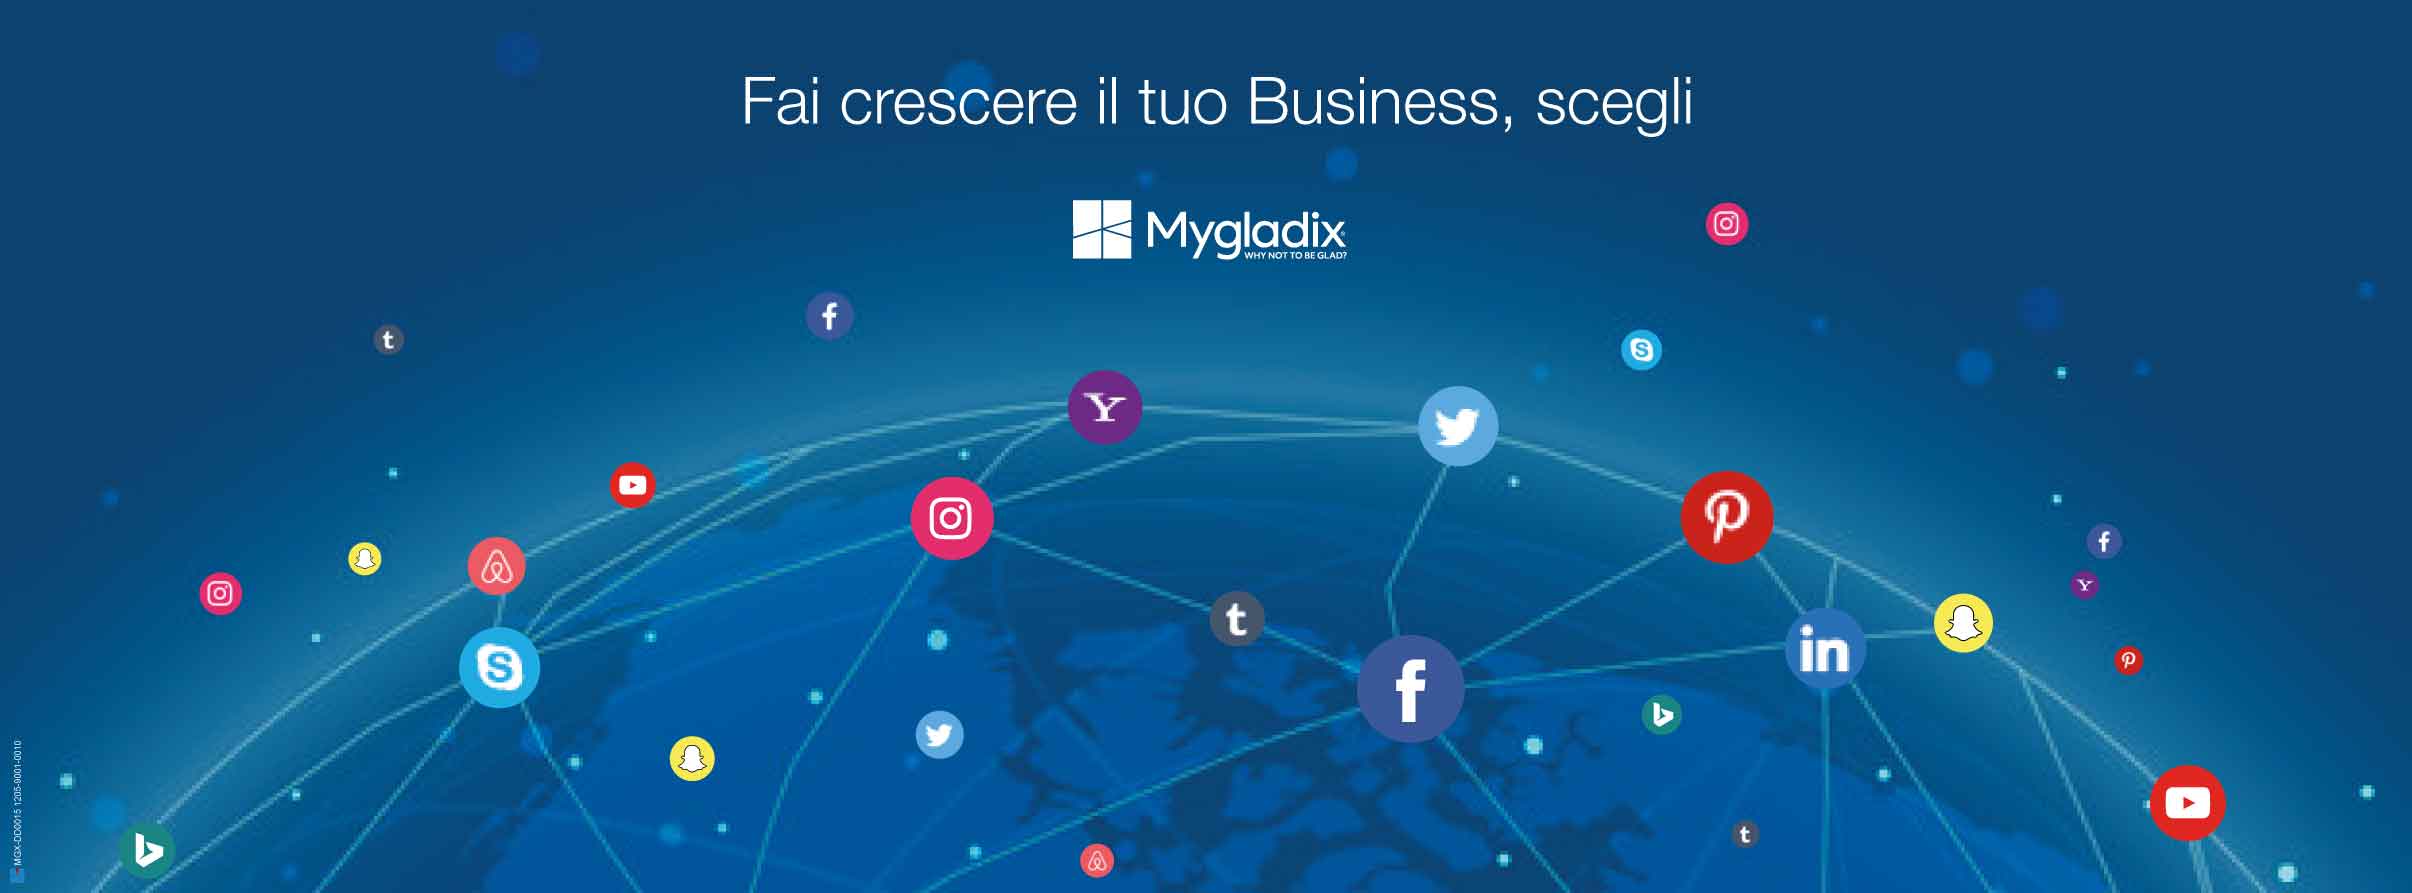 mygladix-social-network